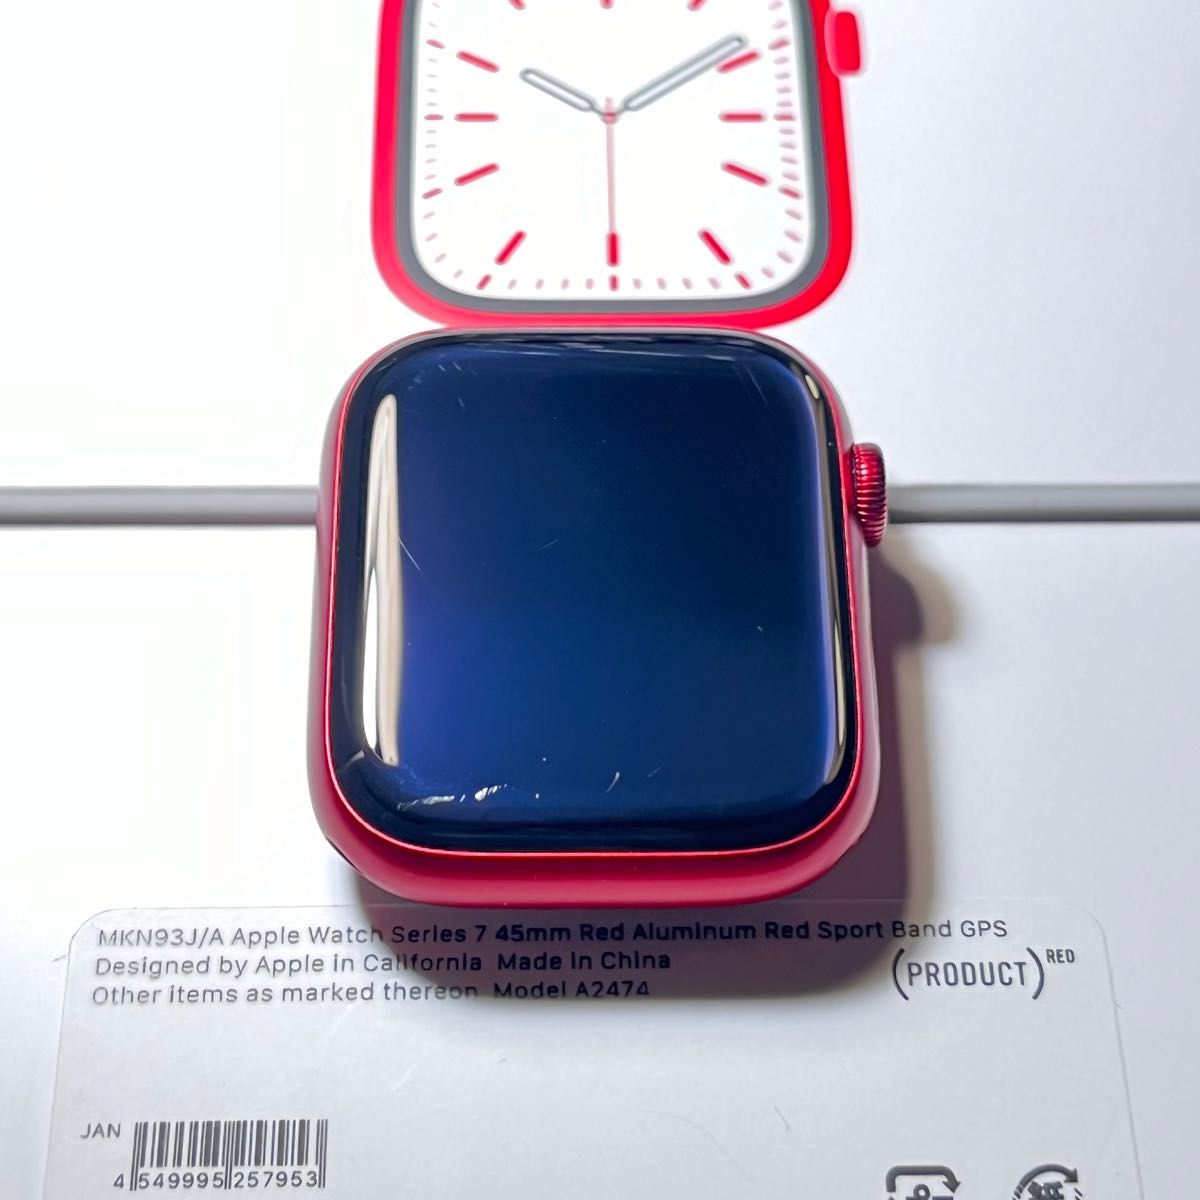 Apple Watch Series7 GPS モデル 45mm プロダクトレッド アルミニウム 本体 MKN93J/A